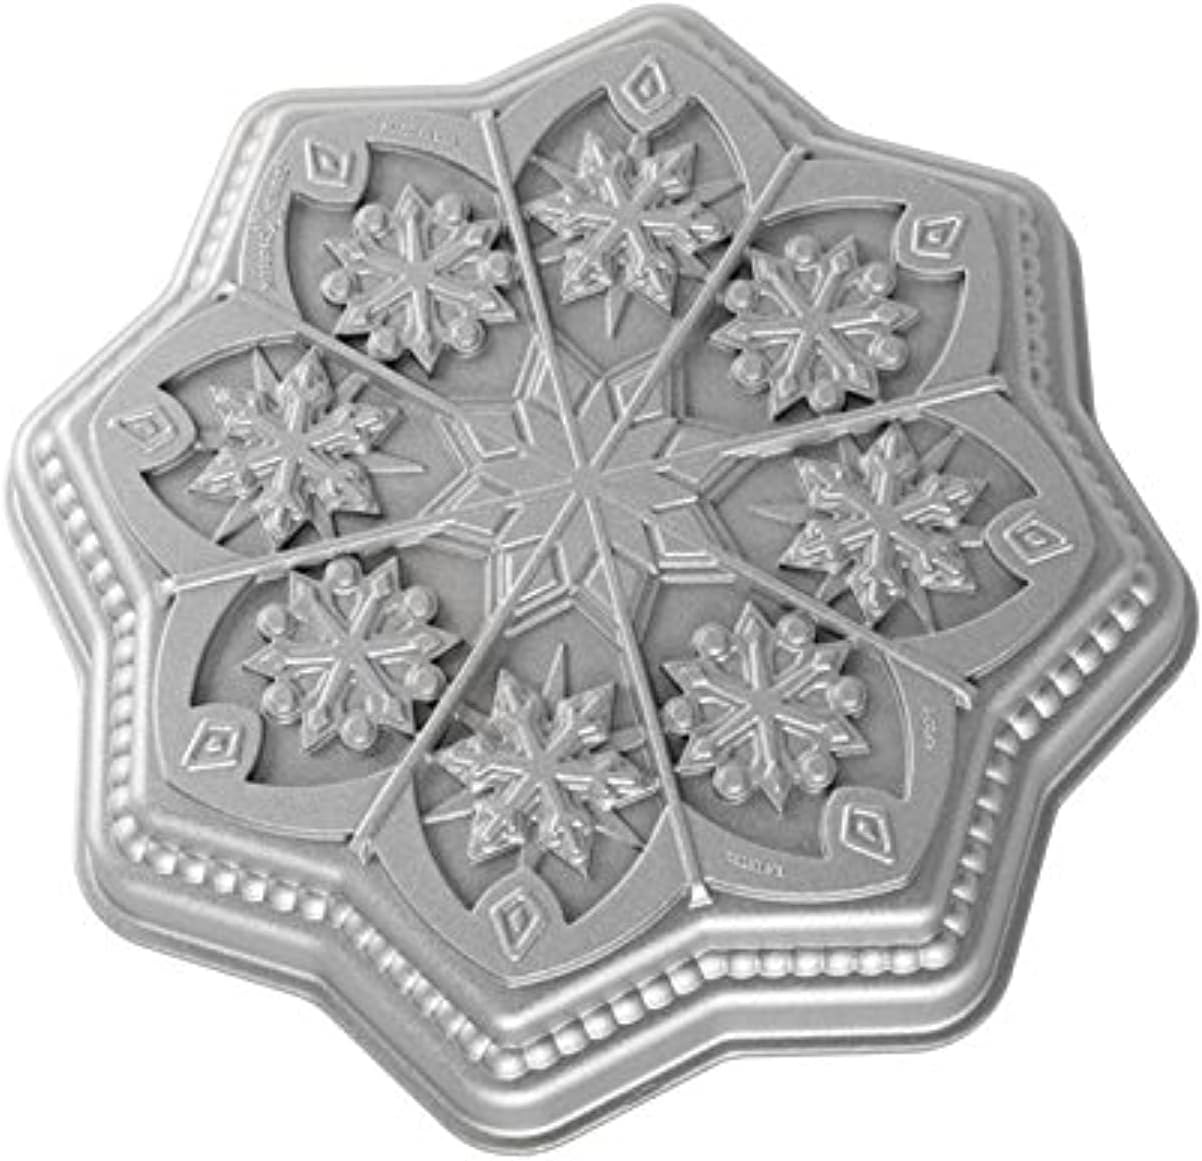 Nordic Ware snowflake shortbread mold.